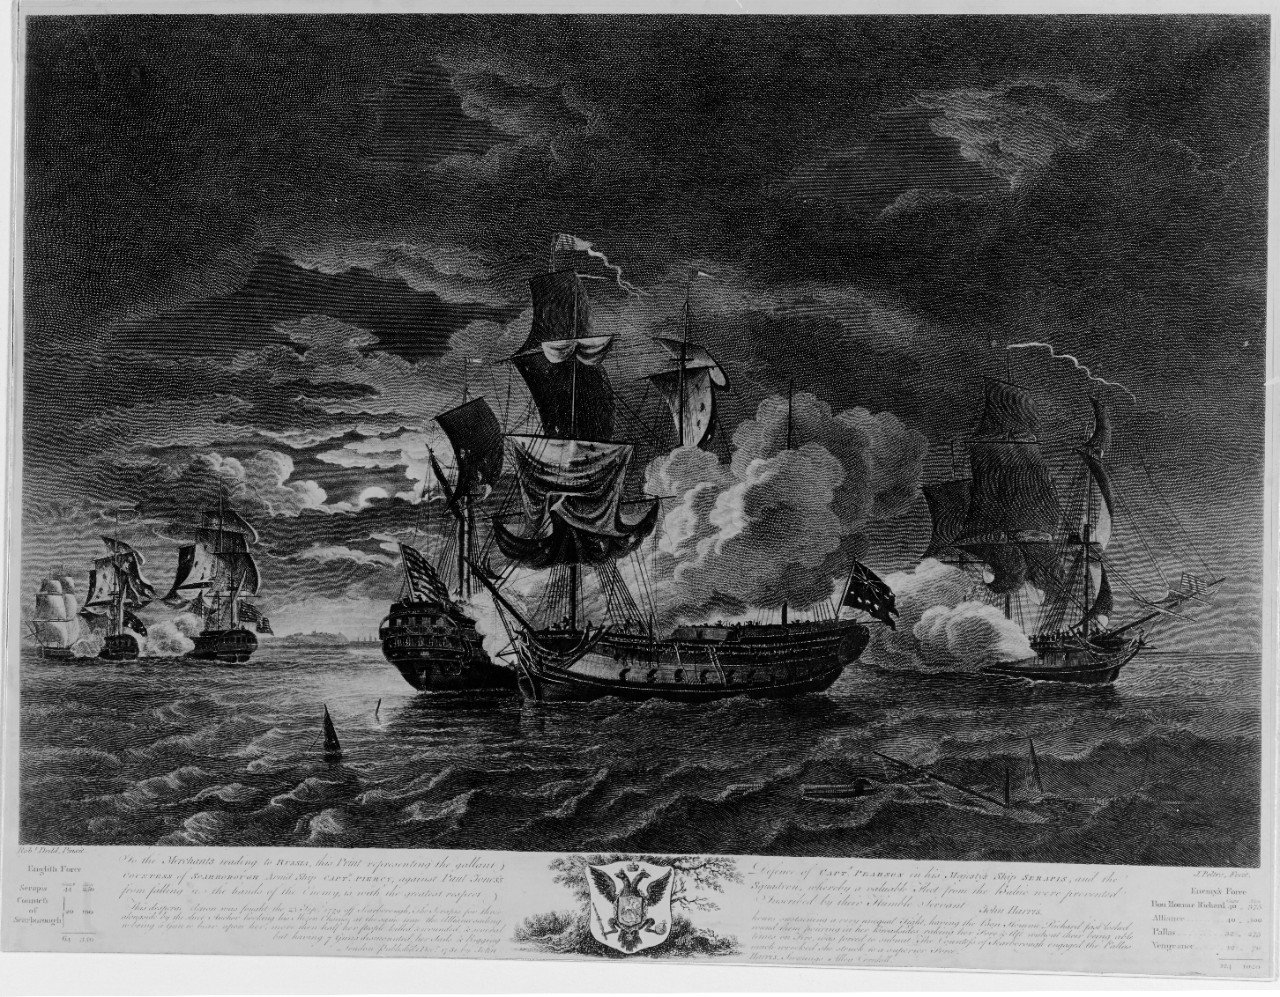 BON HOMME RICHARD vs. HMS SERAPIS